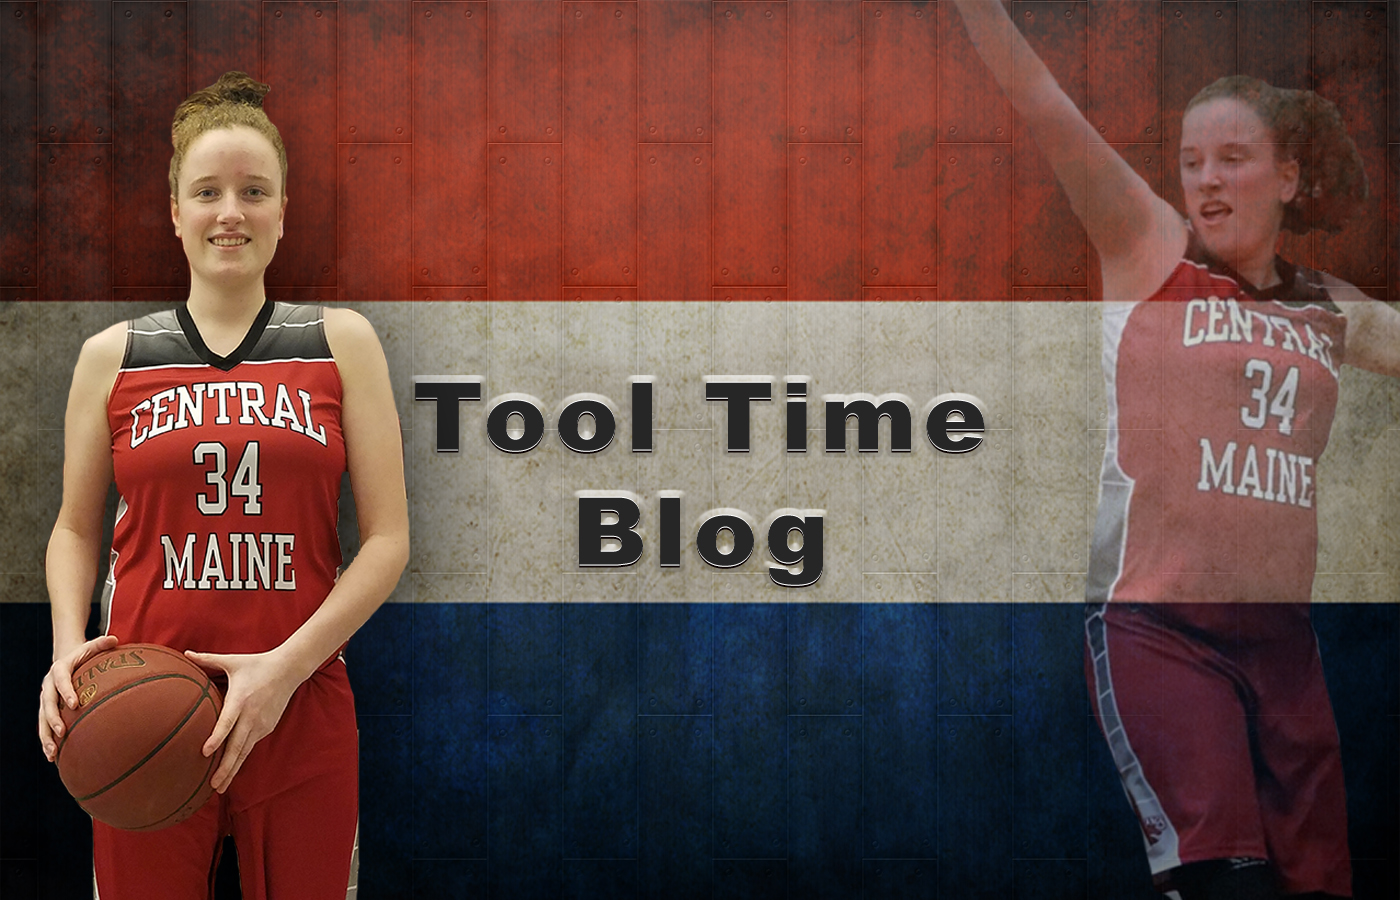 Tool Time Blog - 5/11/2019